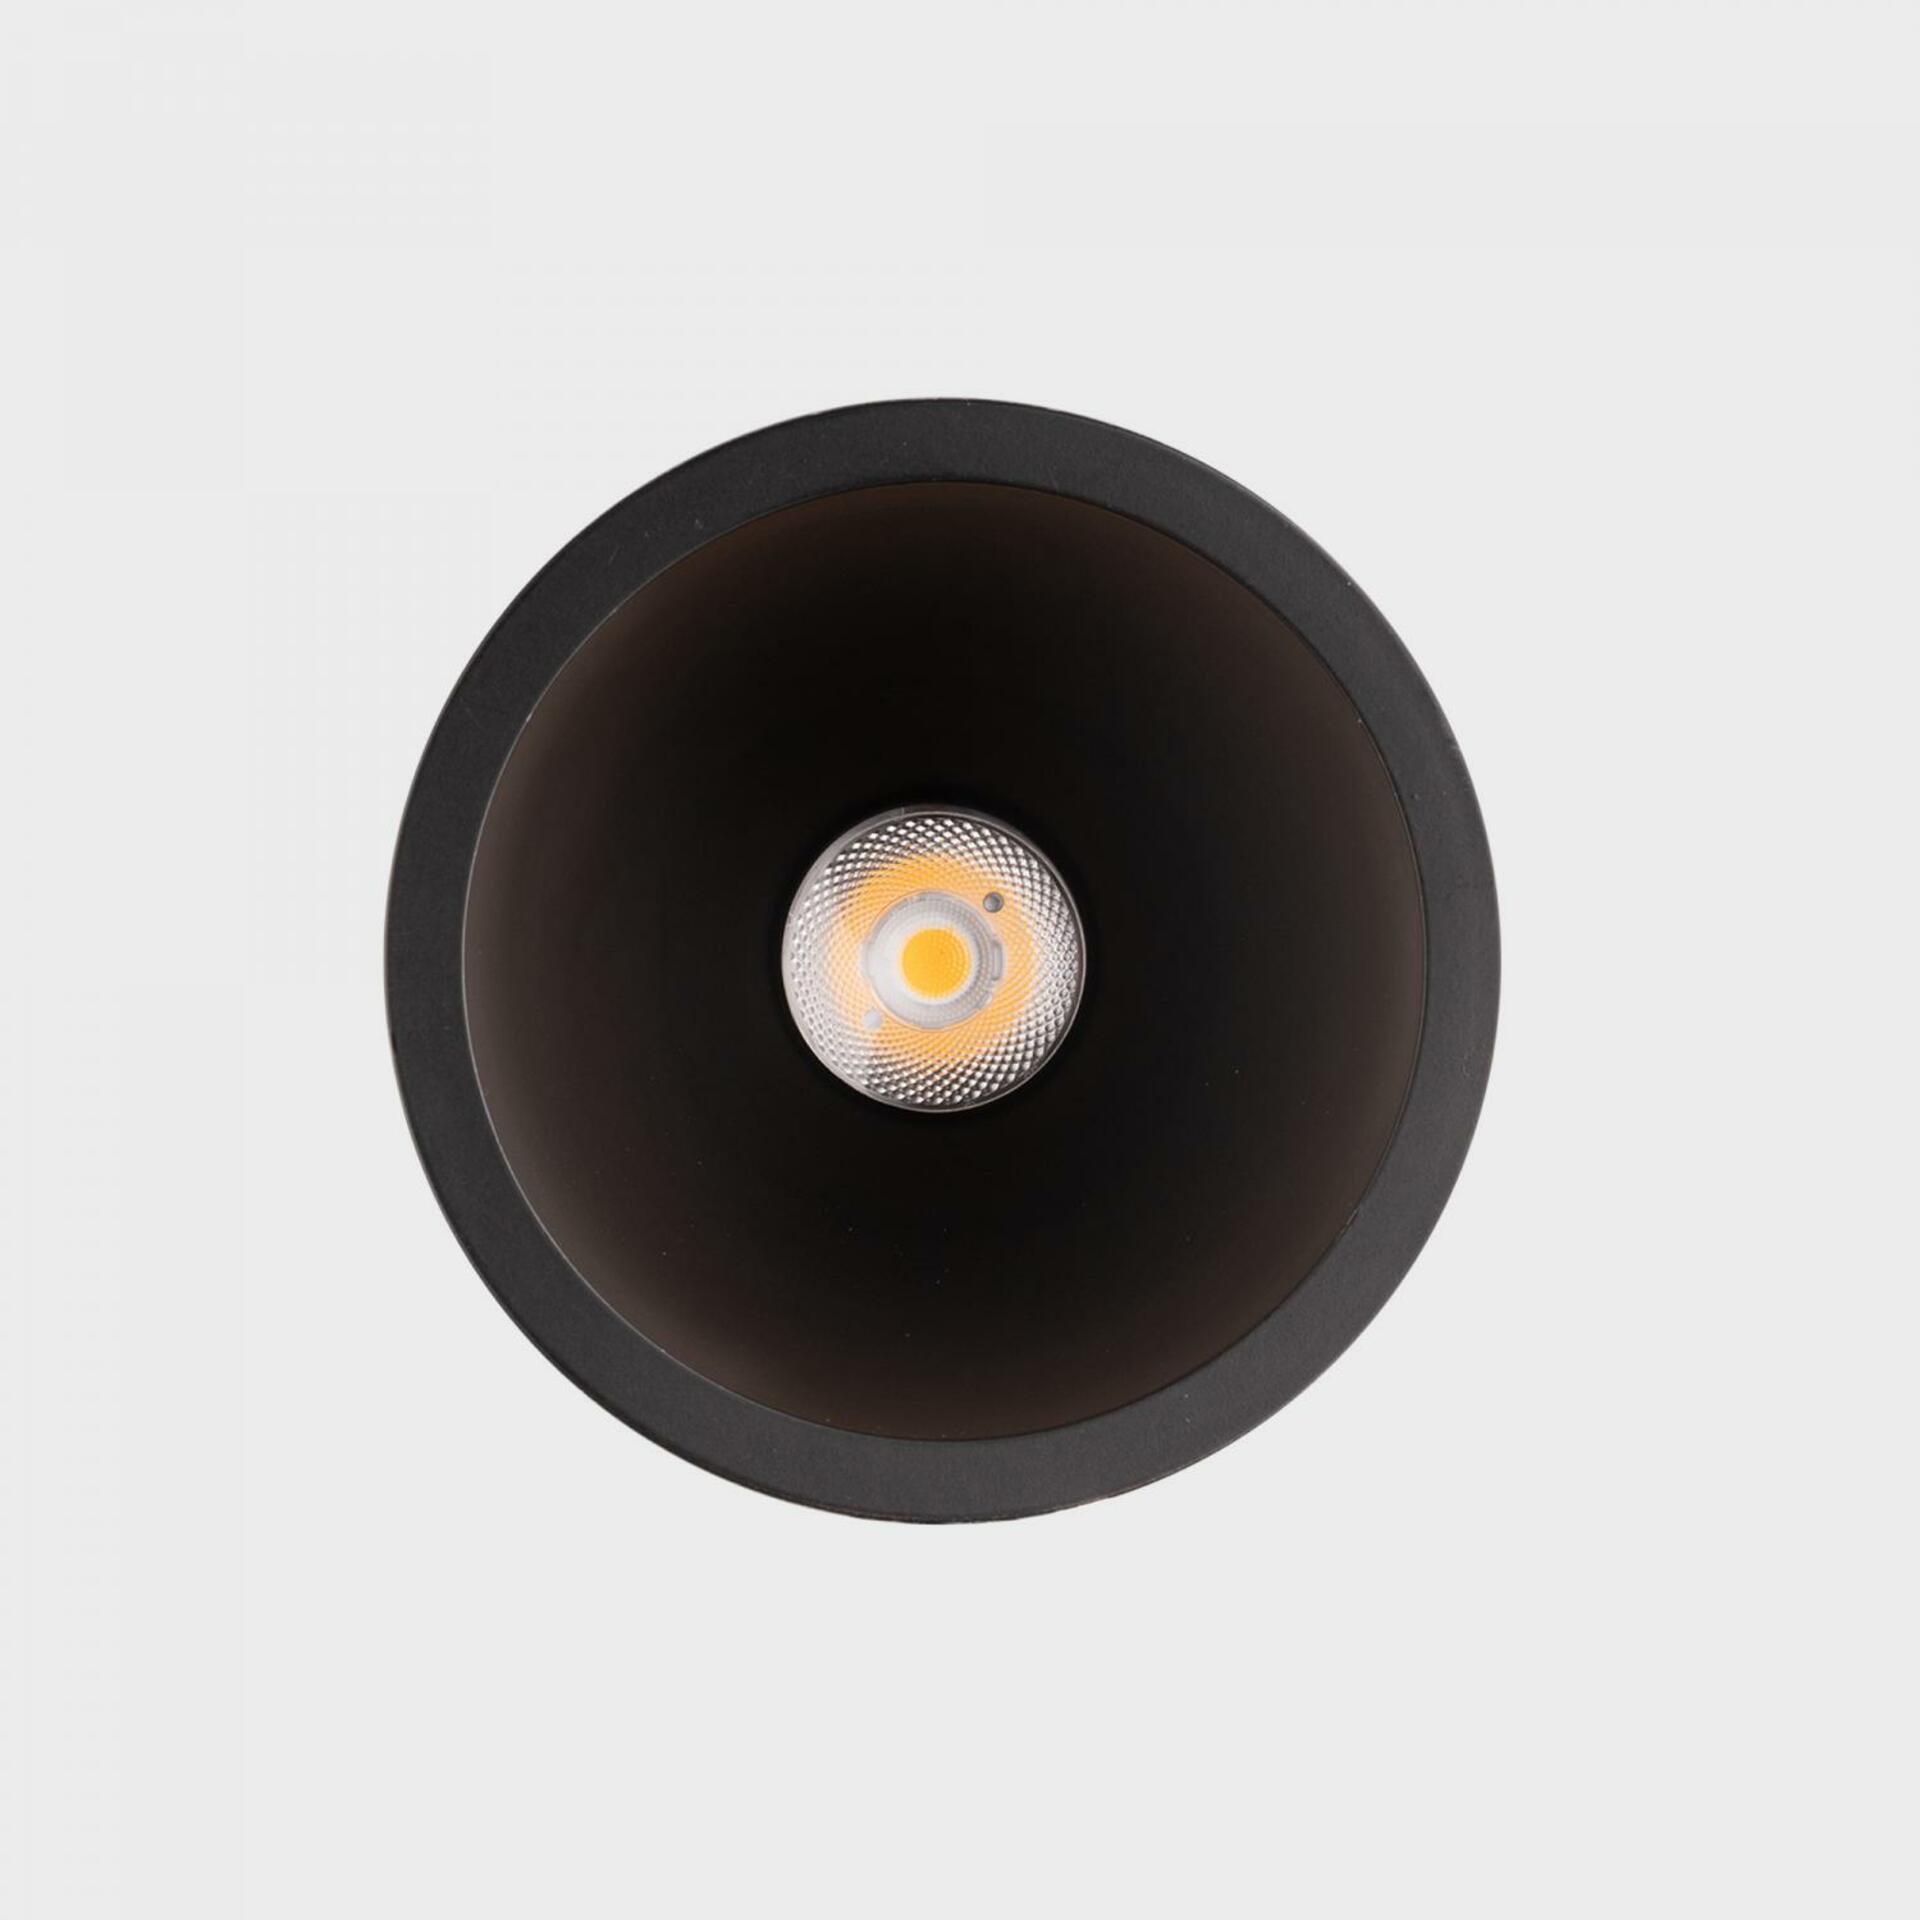 KOHL LIGHTING KOHL-Lighting NOON zapuštěné svítidlo s rámečkem pr.93 mm černá 38° 10 W  CRI 80 2700K PUSH